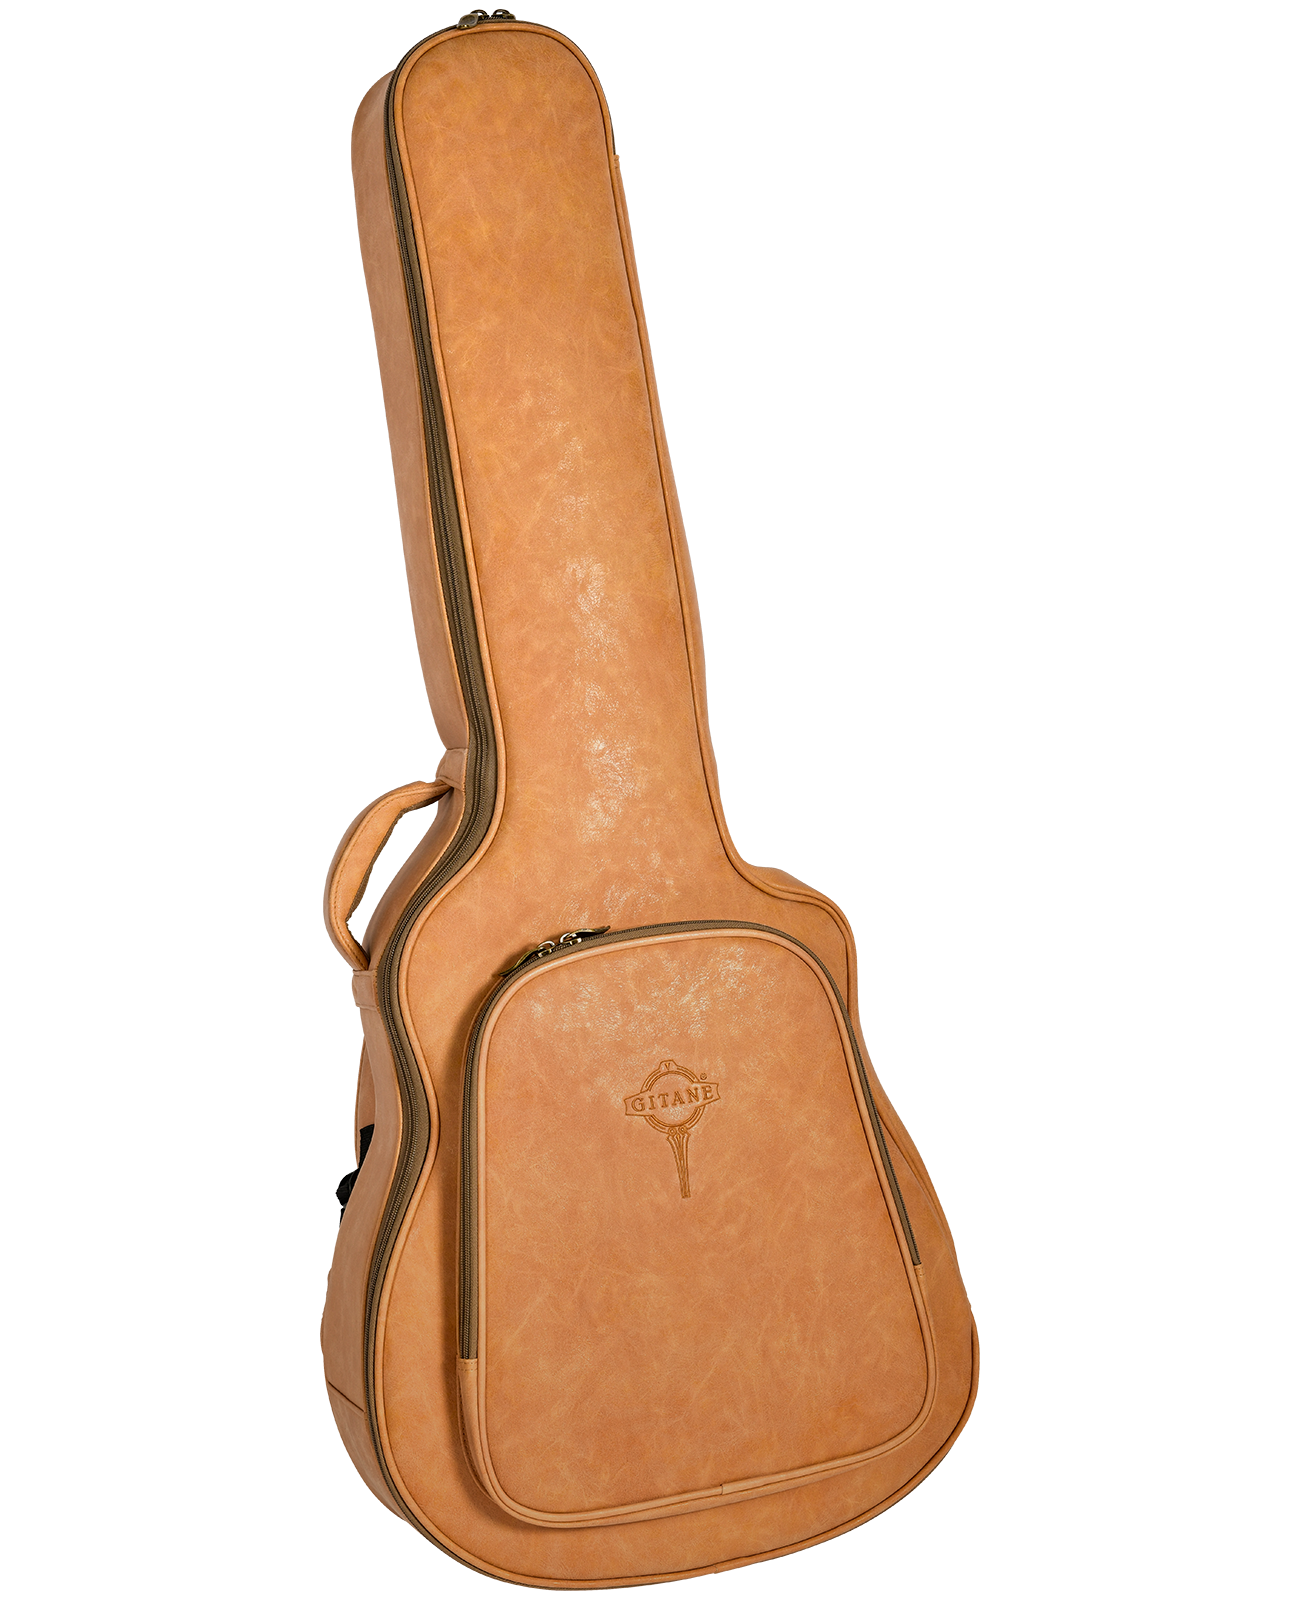 Gitane Django Guitar: DG-255 Oval Hole – Lark in the Morning